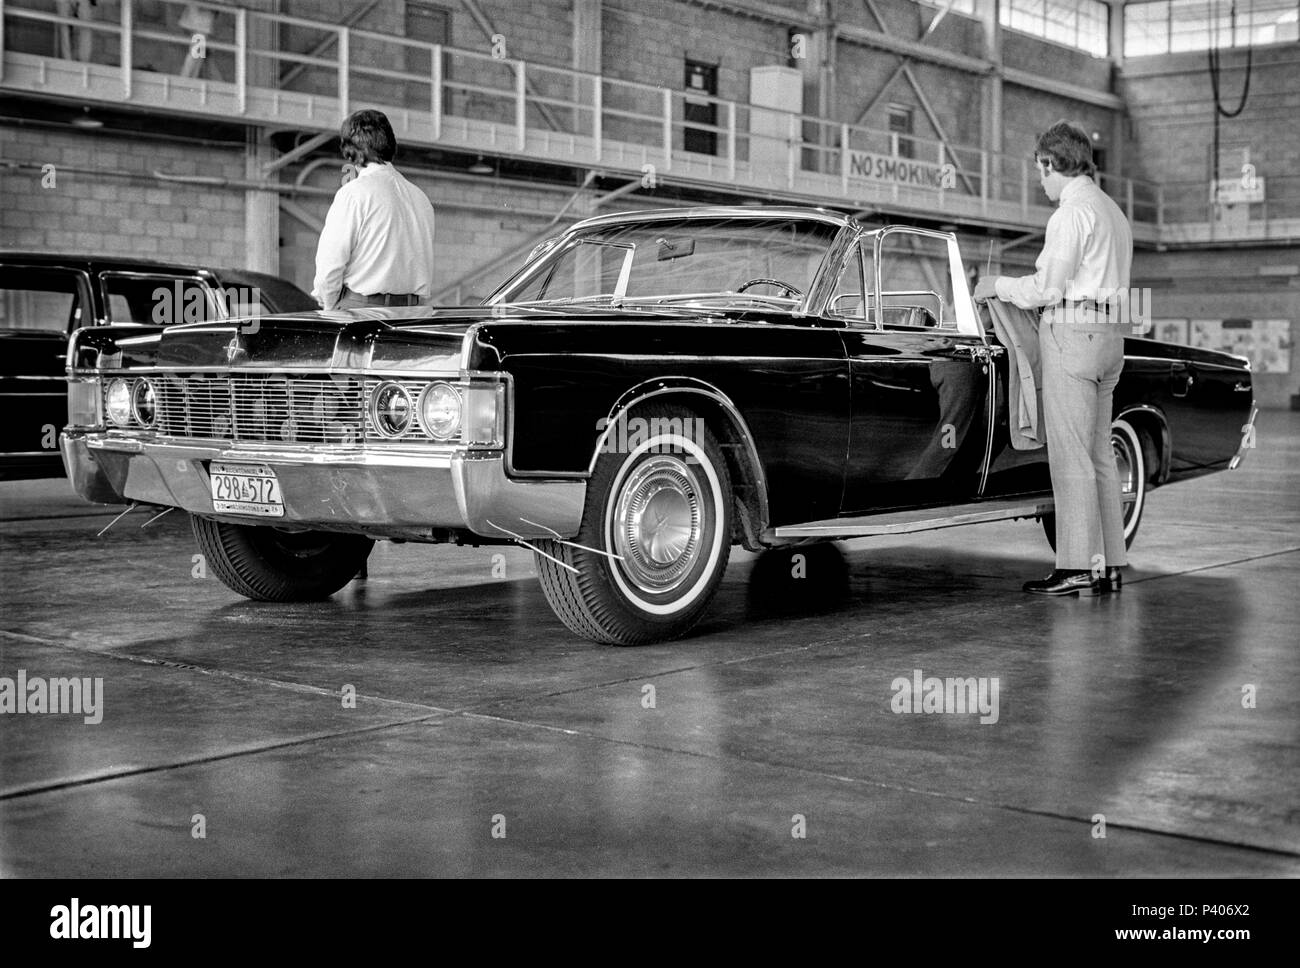 FORT SMITH, AR, USA - 10 août 1975 -- United States Secret Service agents veillent sur la Honda Accord limosine et Lincoln chase voiture dans un hangar d'avions militaires sécurisé alors que le président Gerald R. Ford tours un nouveau centre d'accueil des réfugiés vietnamiens à Fort Chaffee, AR. Banque D'Images